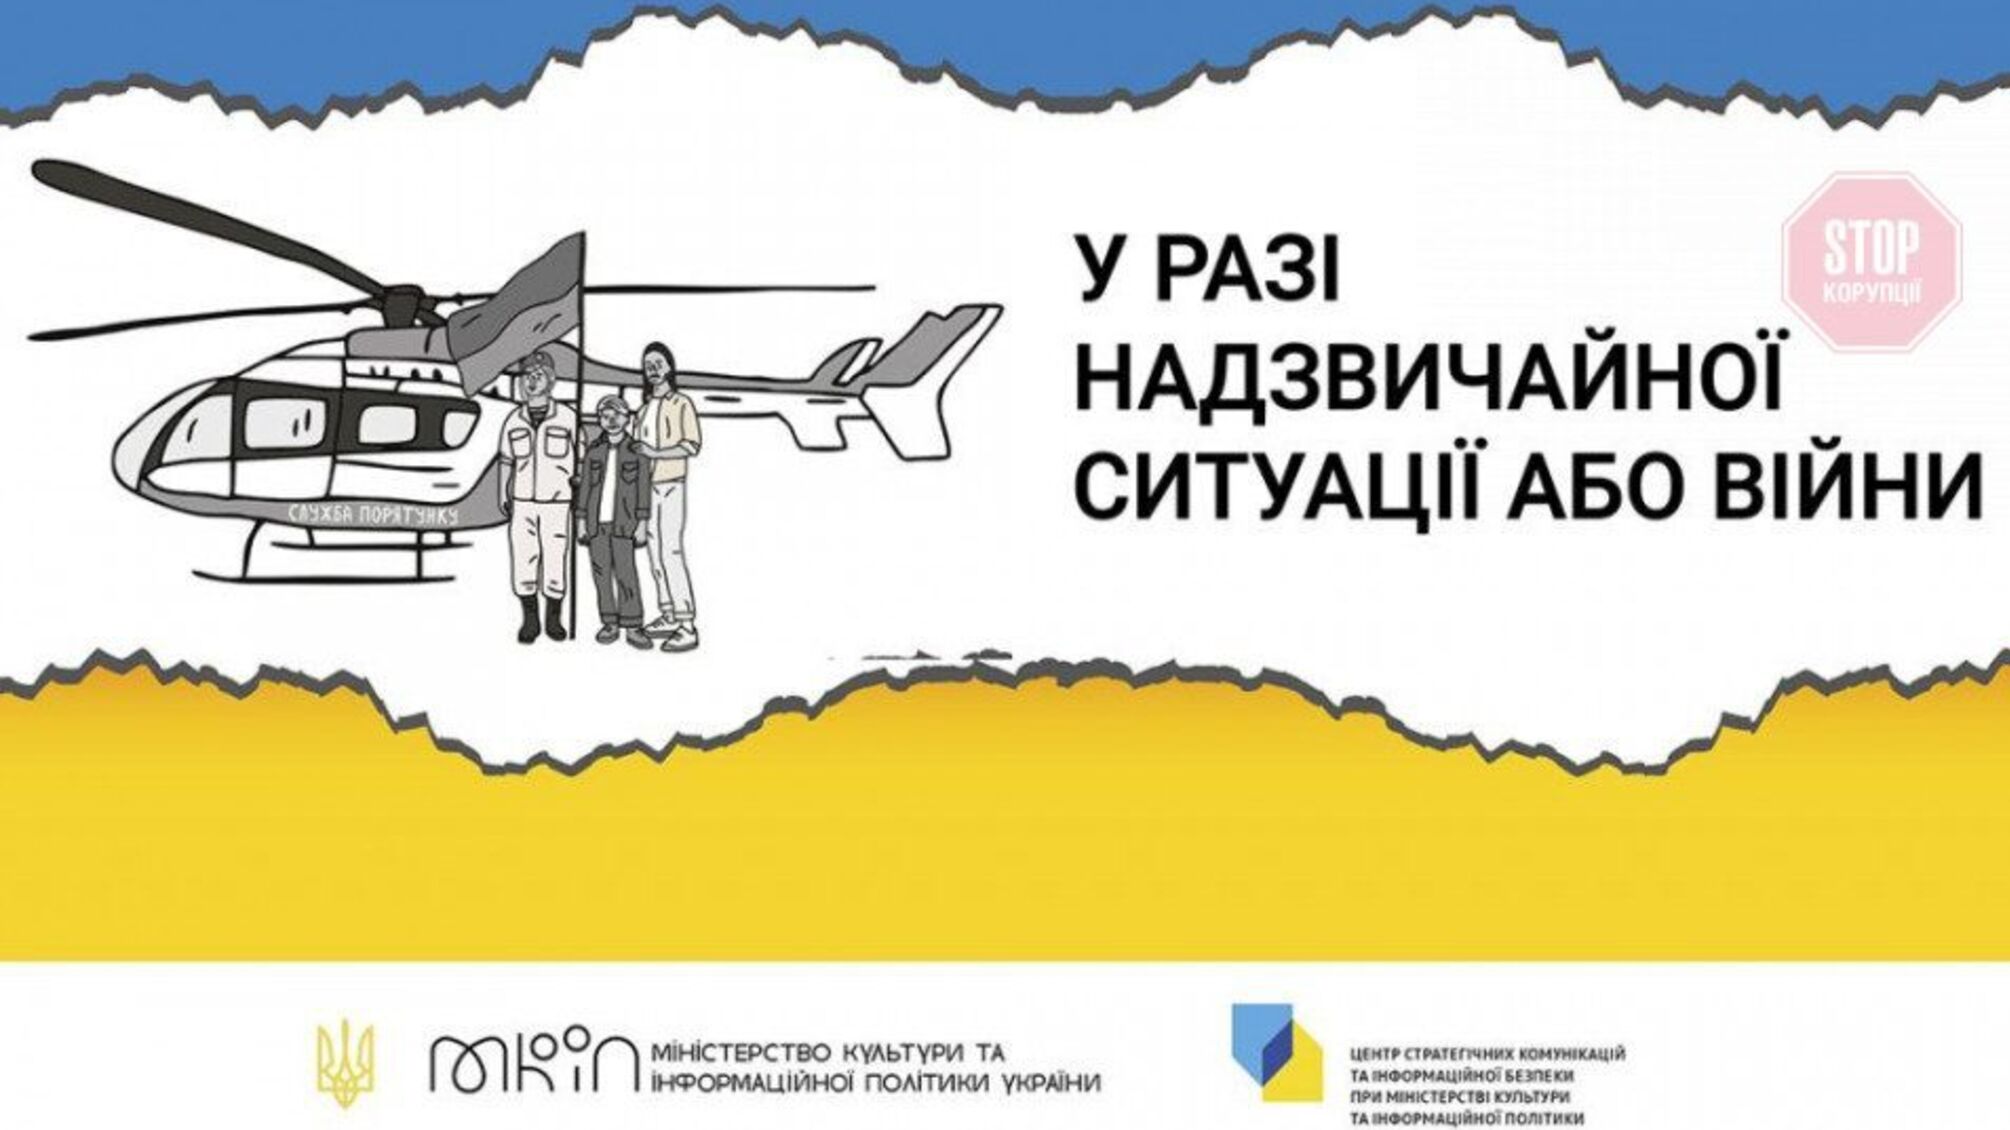 В Украине создали брошюру с инструкциями на случай войны